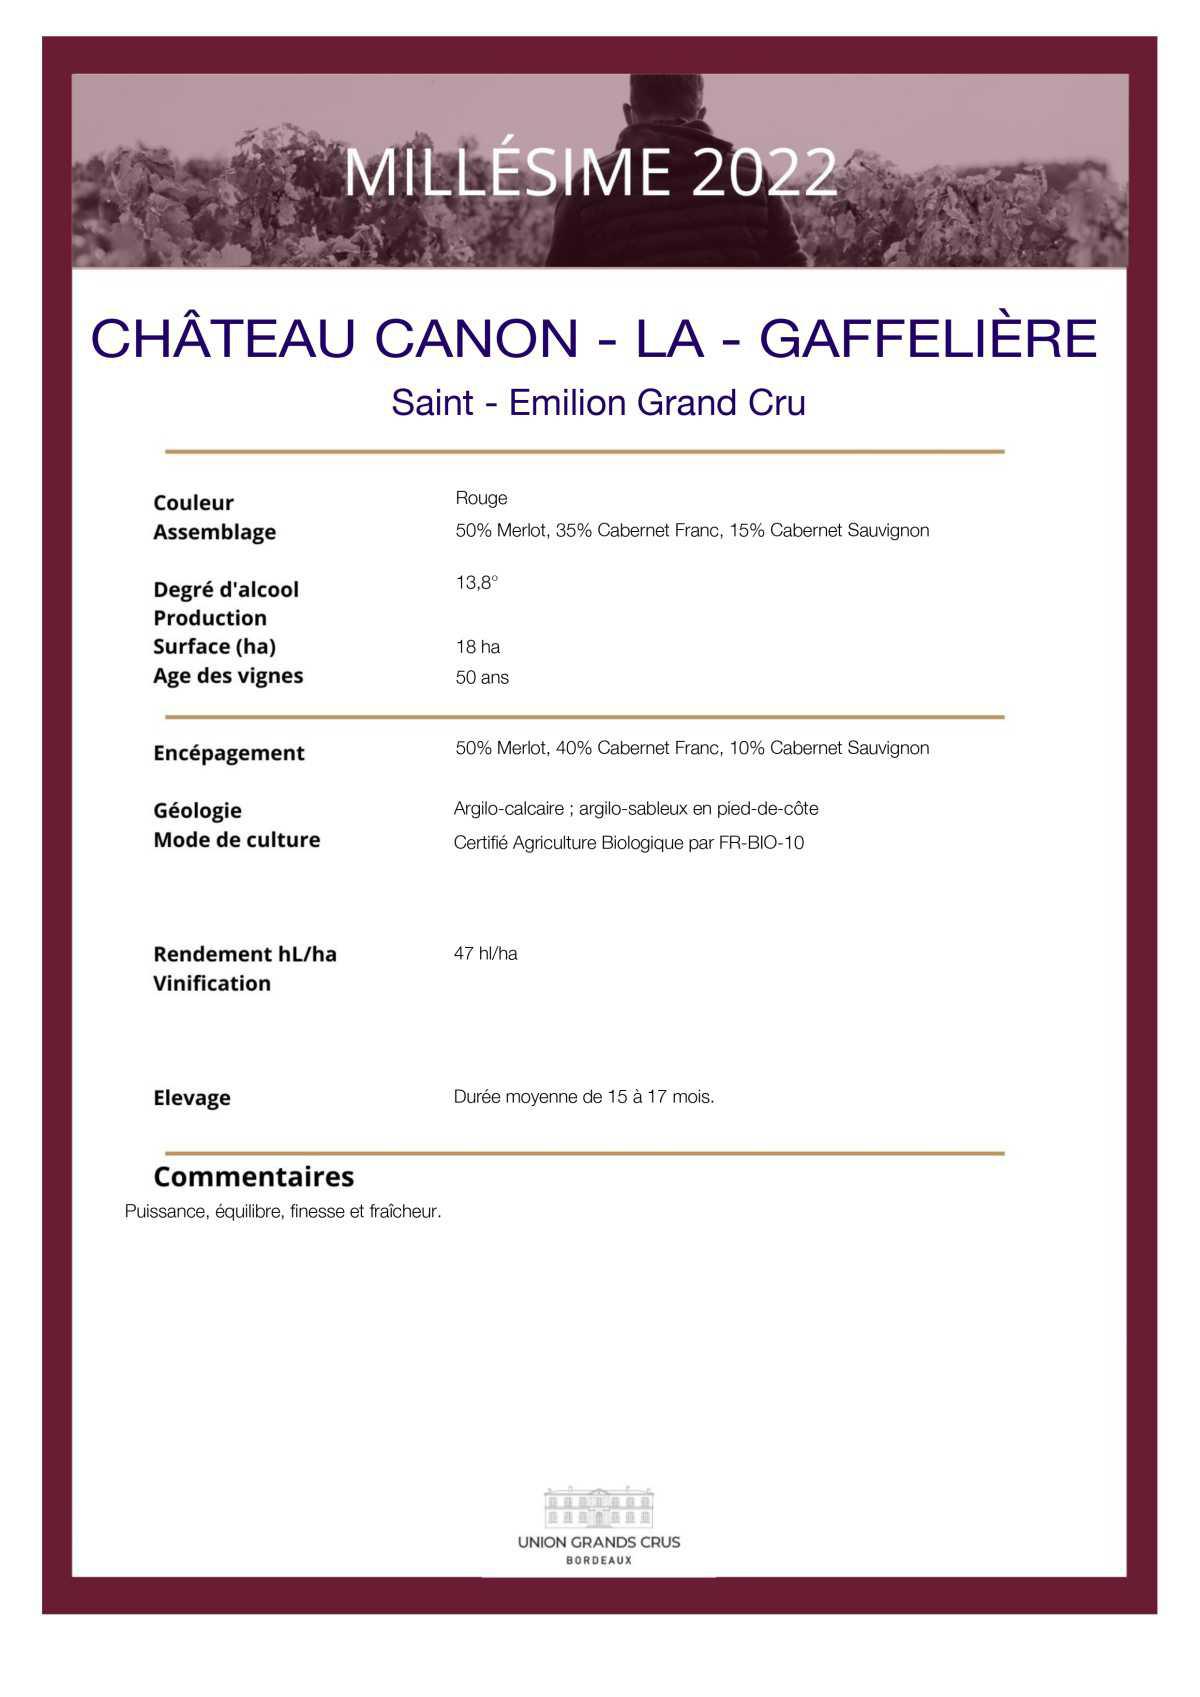  Château Canon - La - Gaffelière